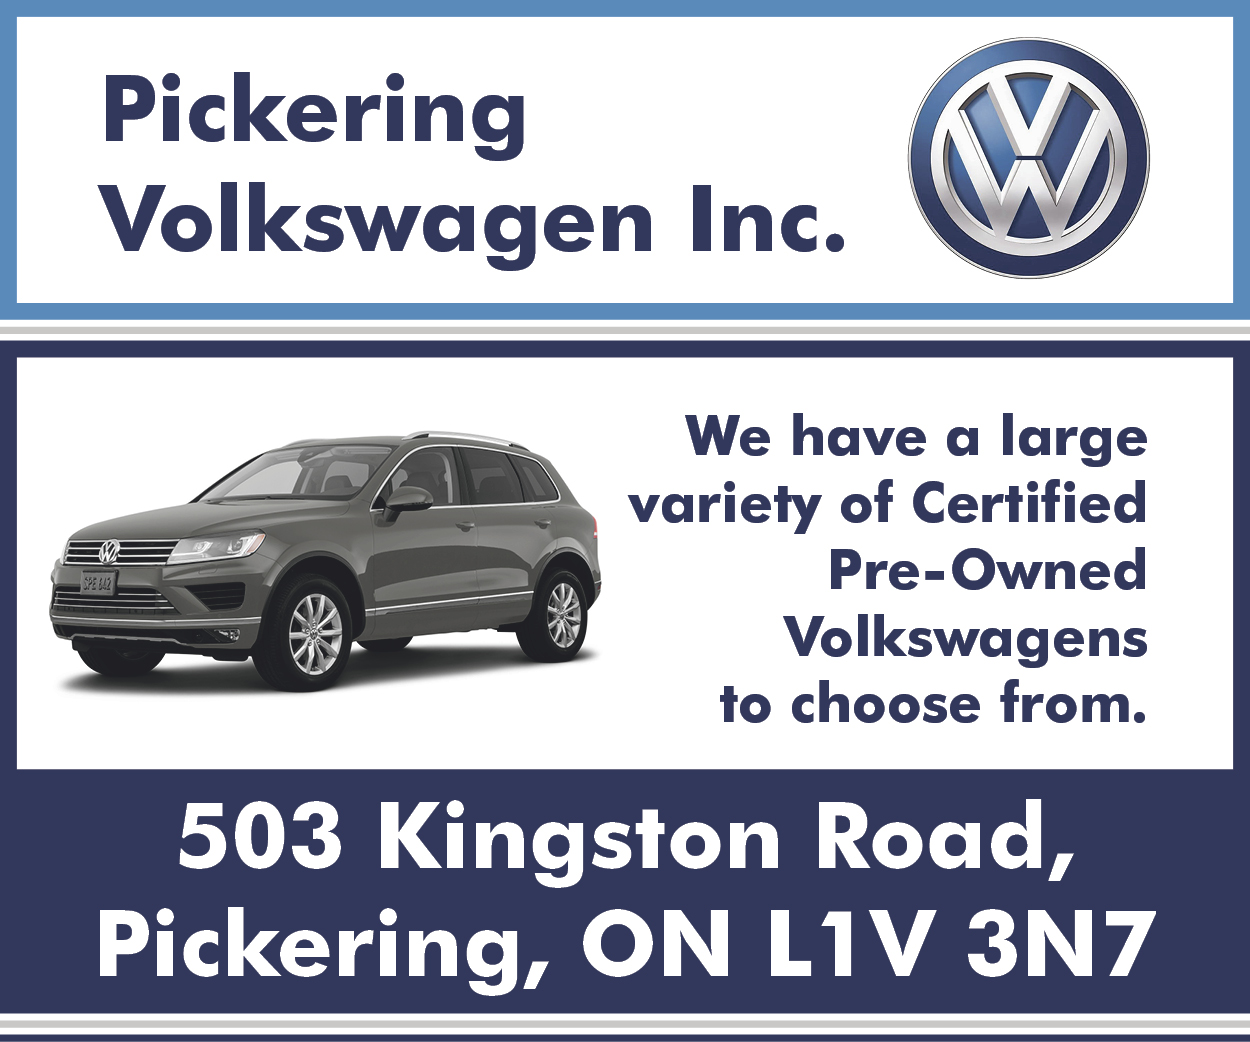 More from Pickering Volkswagen